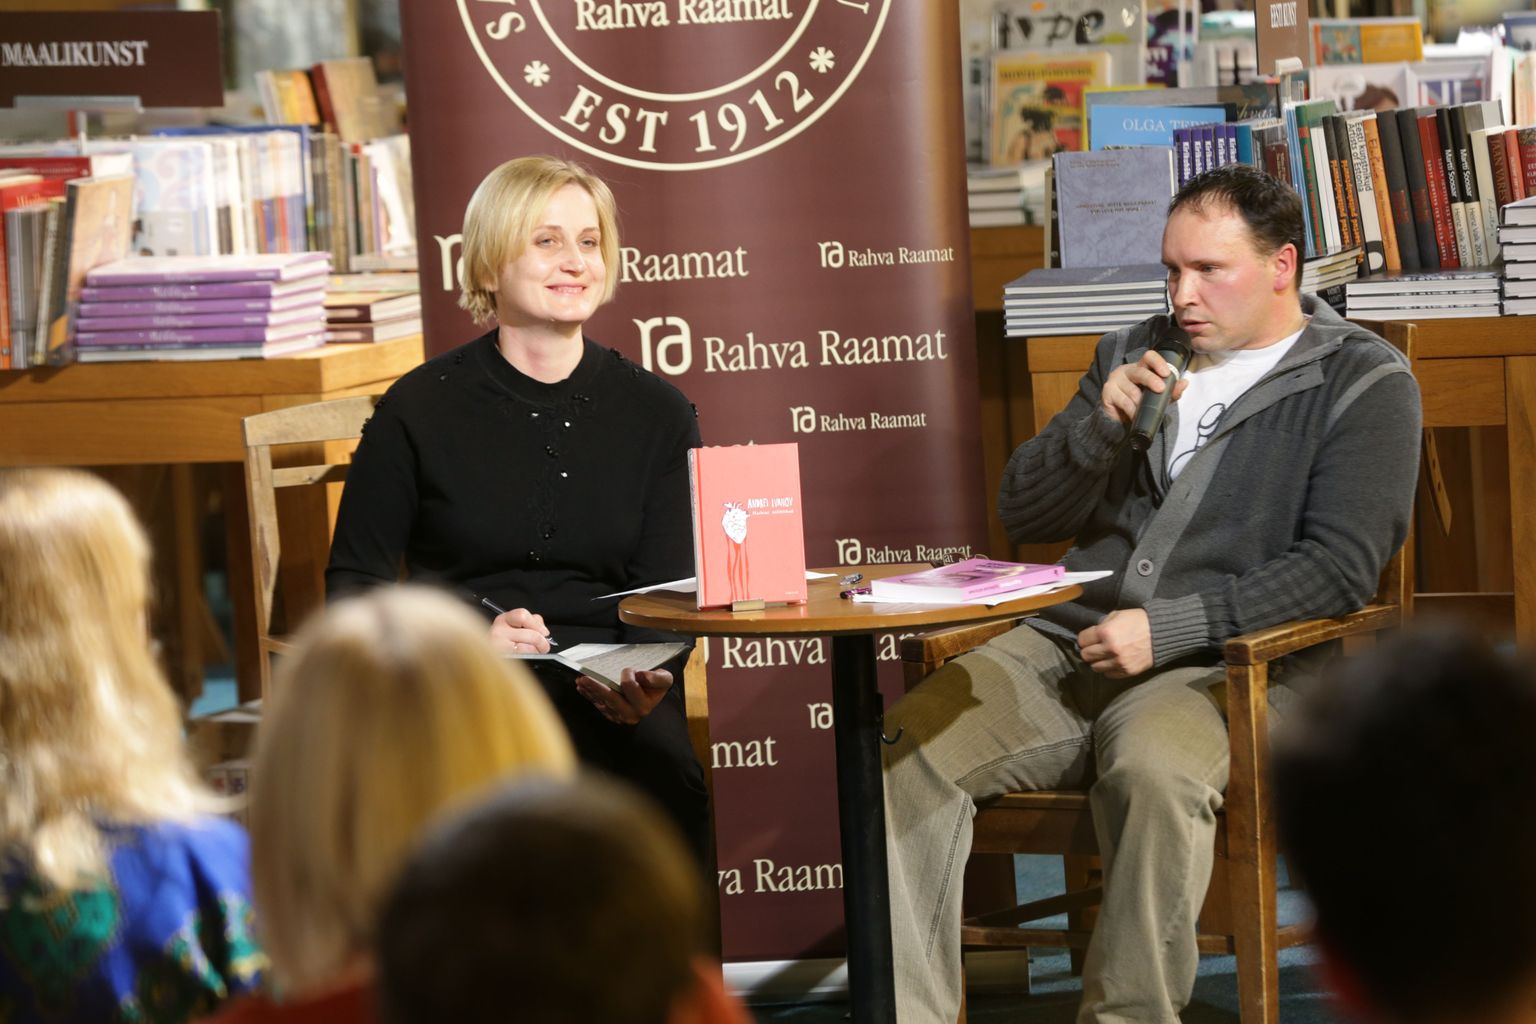 Kirjanik Andrei Ivanov tutvustas oma raamatut "Harbini ööliblikad". Pildil on hetk eestikeelse raamatu esitluselt Rahva Raamatus. Autorit küsitles Ilonna Martsion.